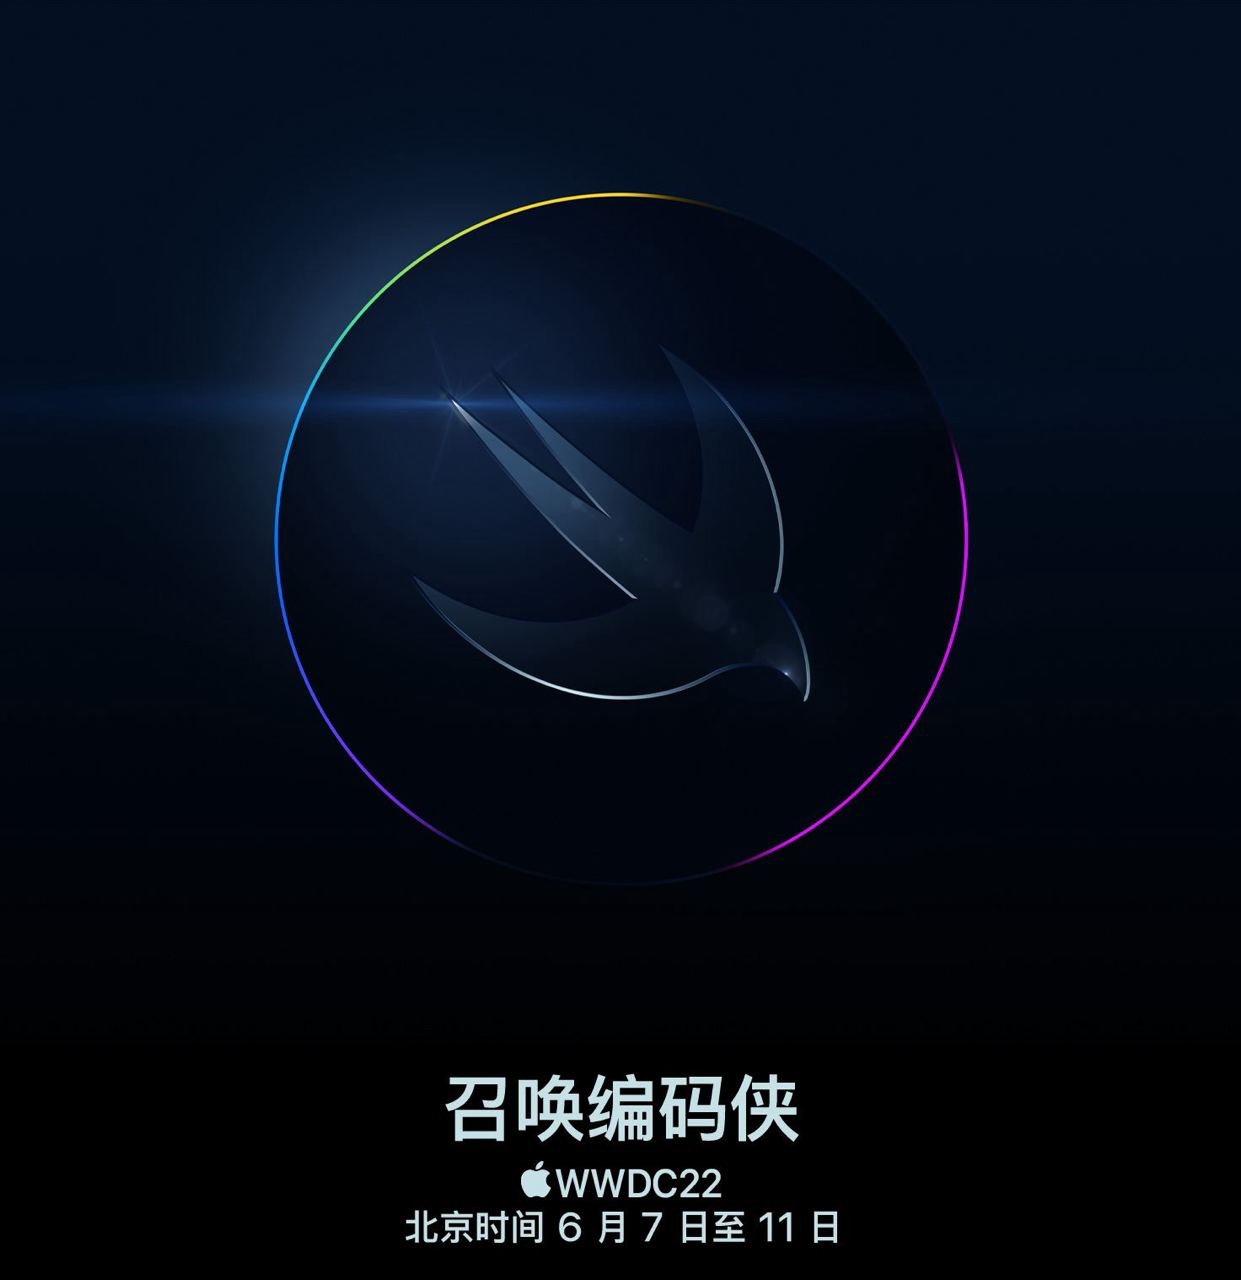 北京时间 6 月 7 日苹果WWDC22新系统/产品传闻整理汇总-优众博客